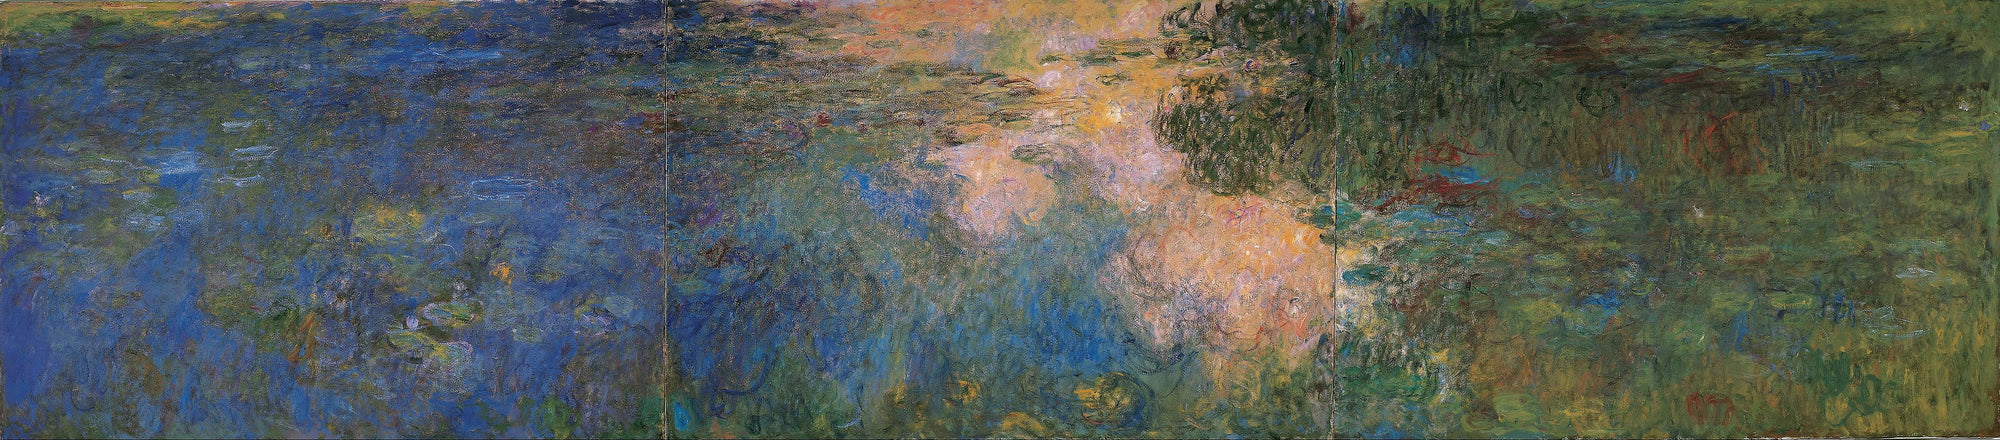 Bassin aux nymphéas - Claude Monet